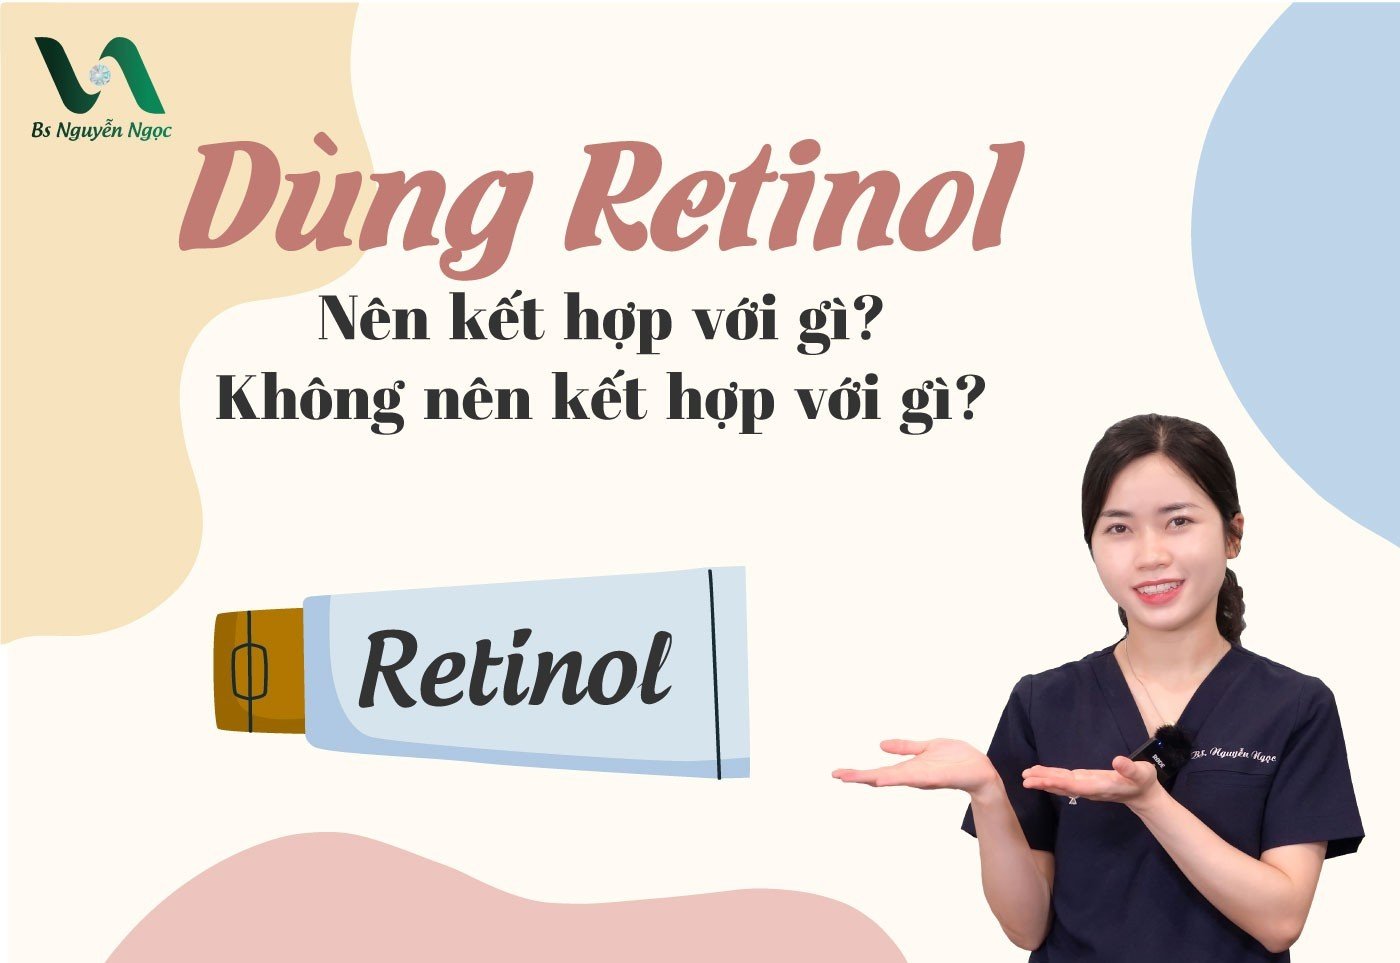 Dùng retinol kết hợp với gì? Không nên kết hợp với gì?